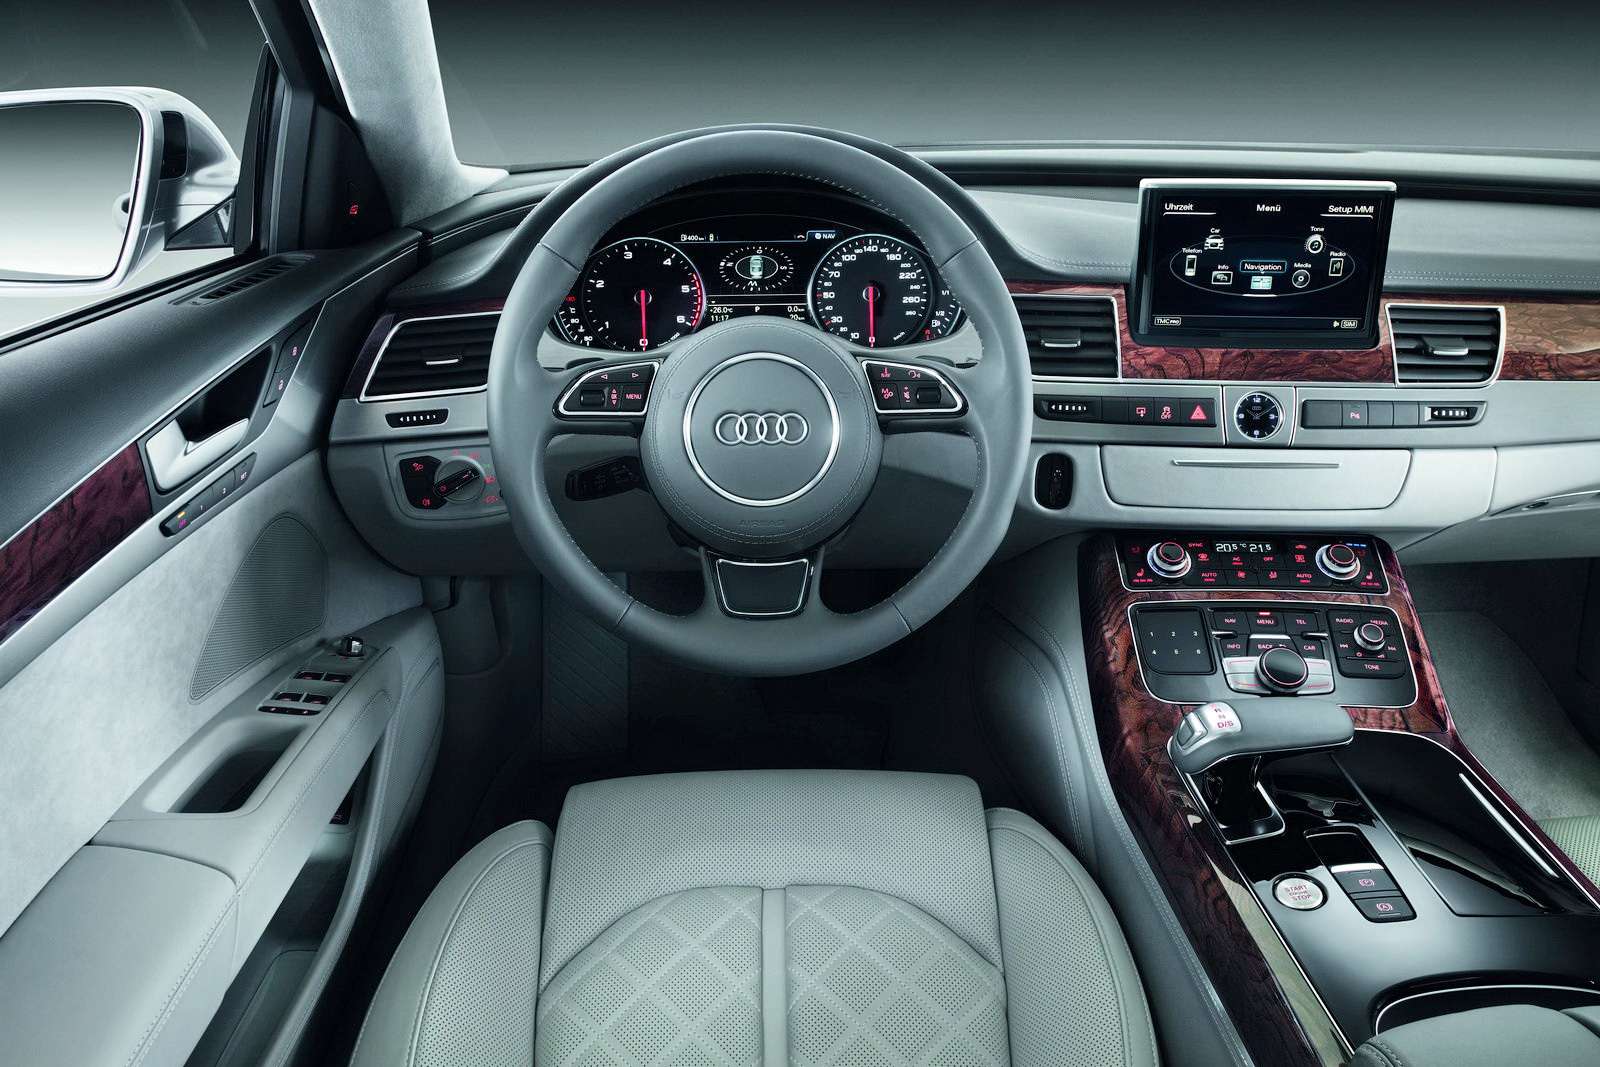 Audi A8 2010 oficjalnie zdjecia 2009